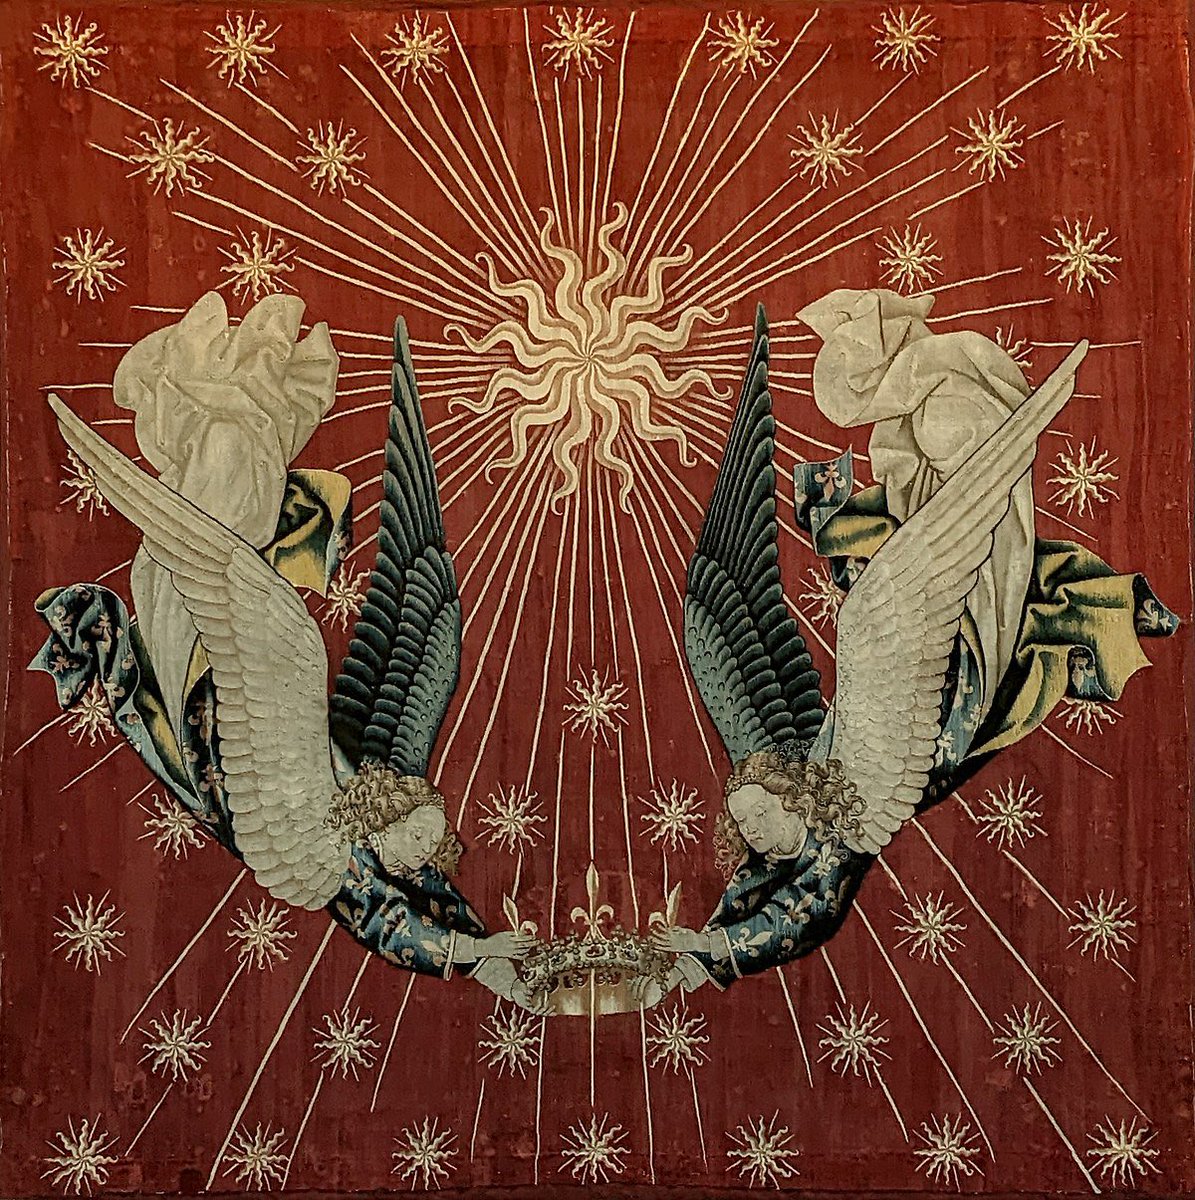 Le dais de Charles VII est une tapisserie exécutée vers 1430, autrefois placée au dessus du trône du roi de France. Conservé au Musée du Louvre, il est actuellement présenté jusqu’au 16 juin 2024 dans l’exposition temporaire consacrée aux arts sous Charles VII au musée de Cluny.